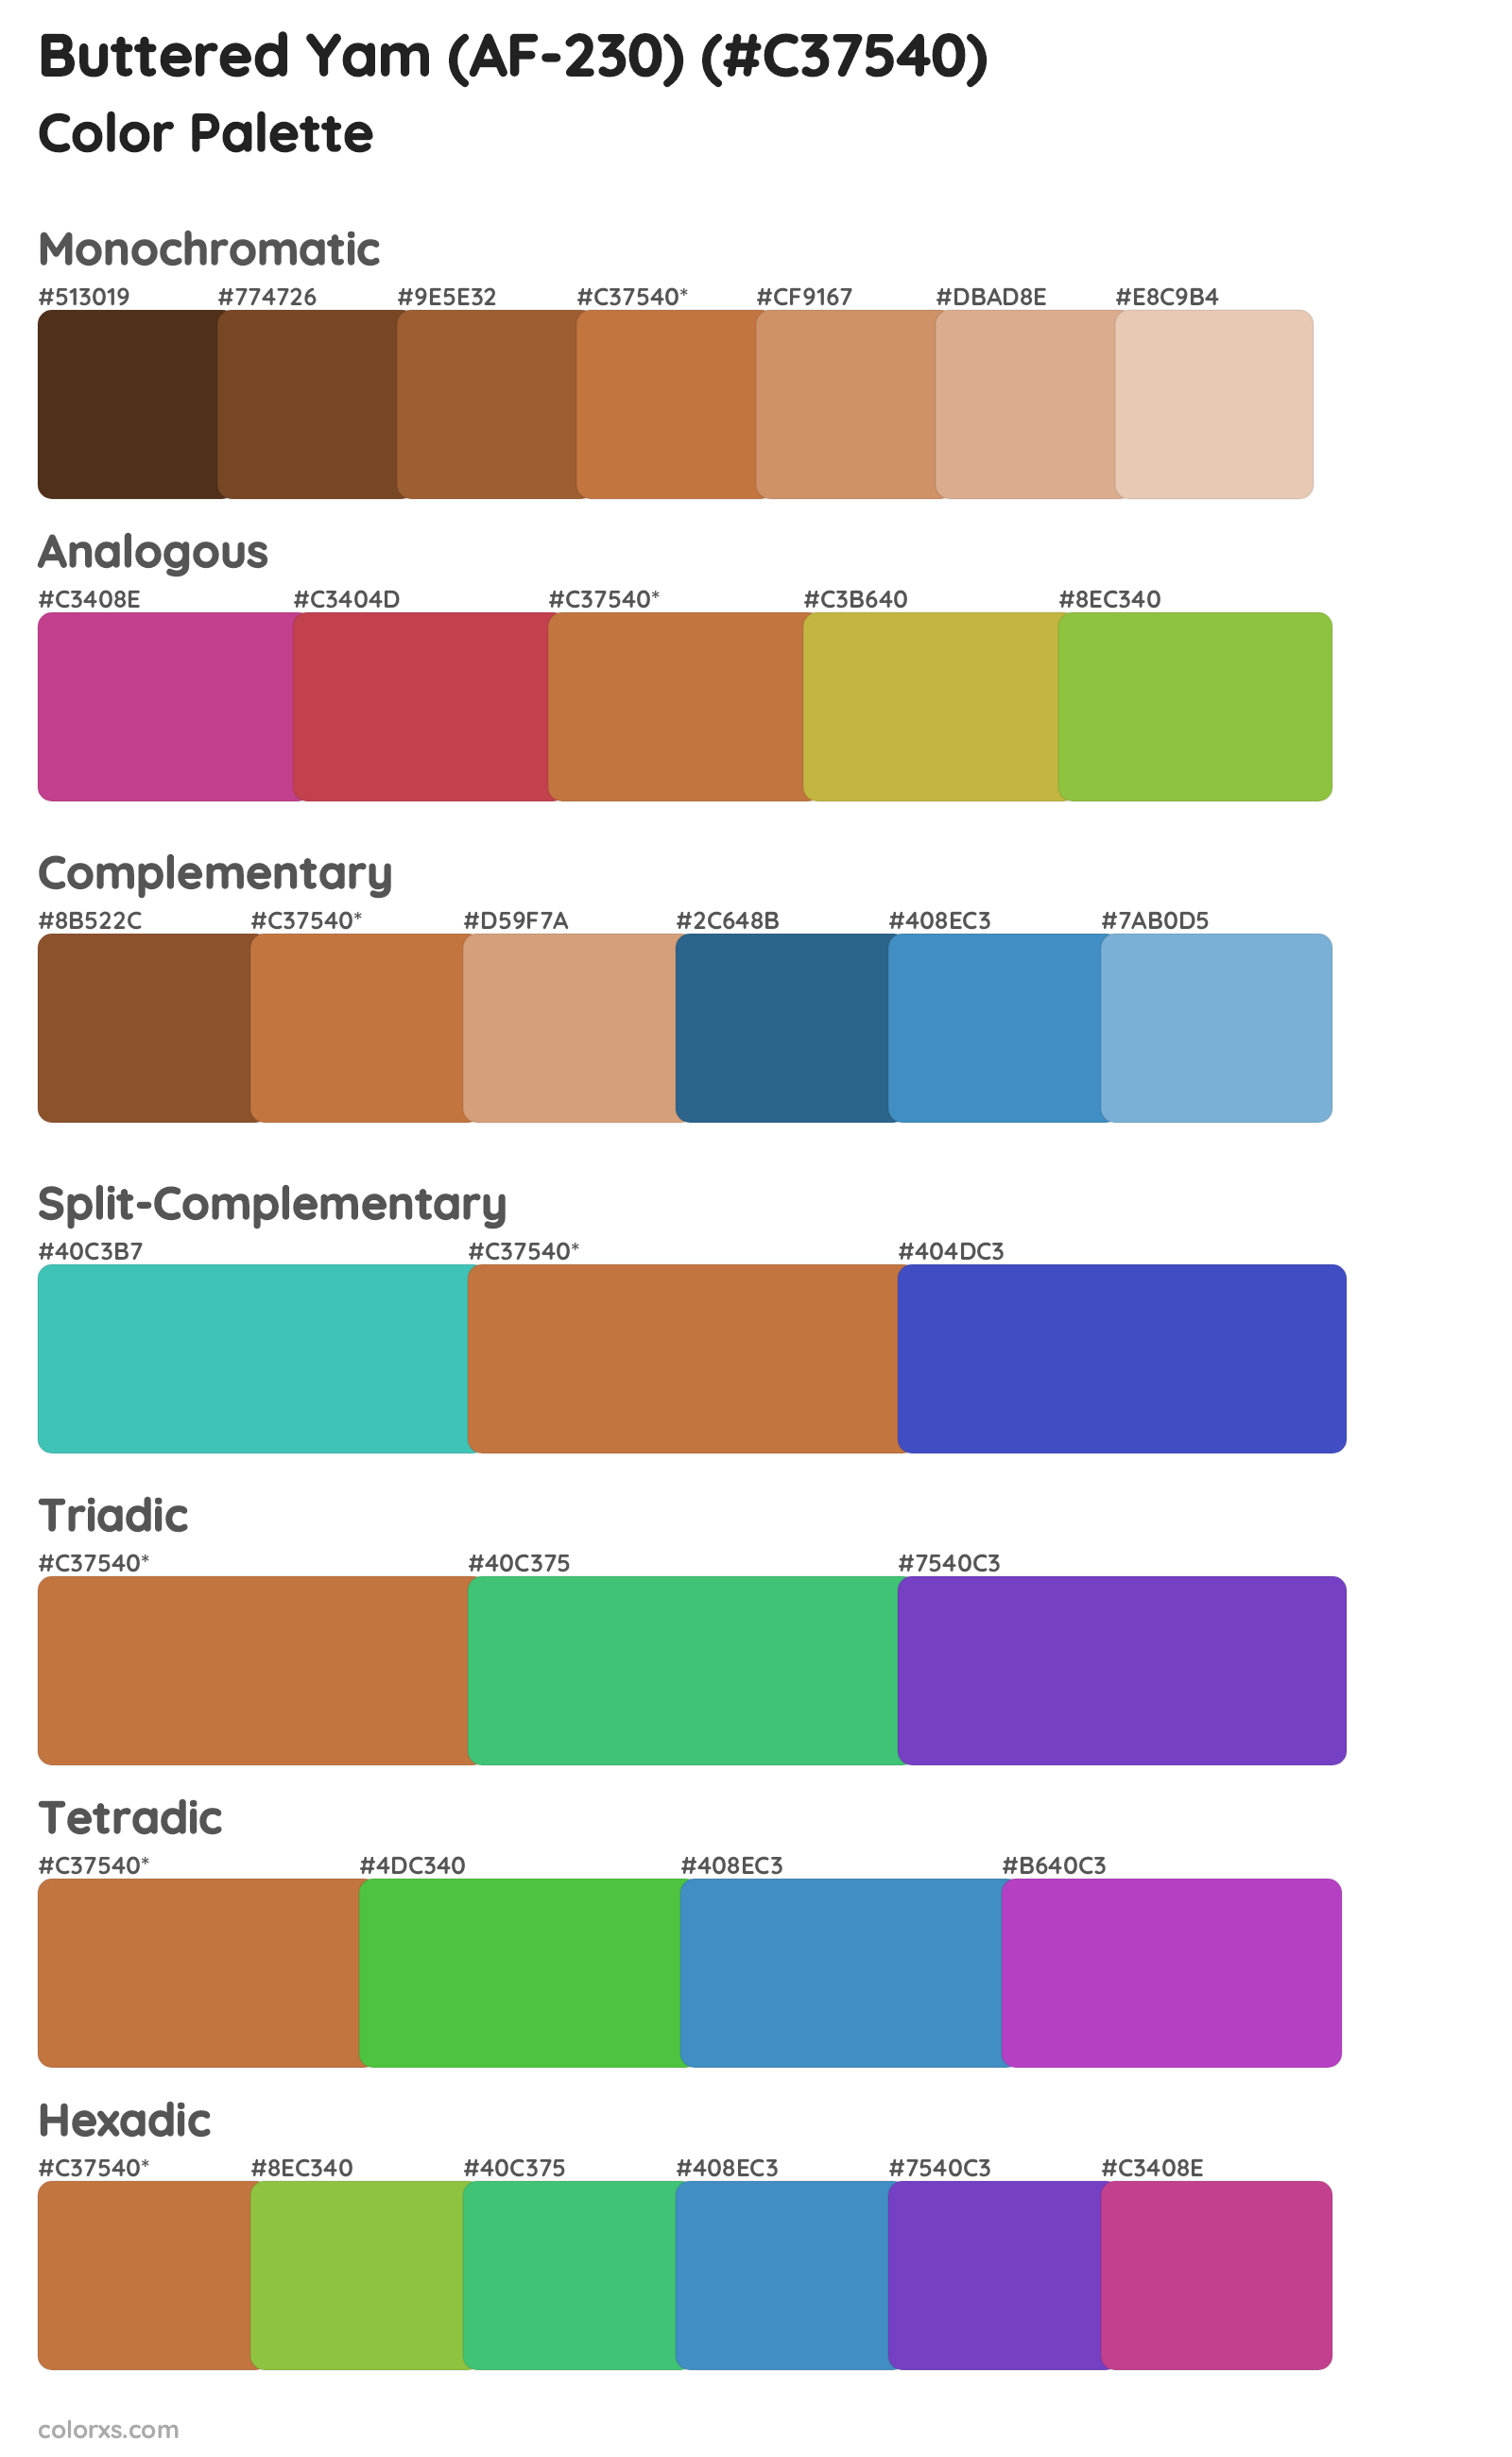 Buttered Yam (AF-230) Color Scheme Palettes